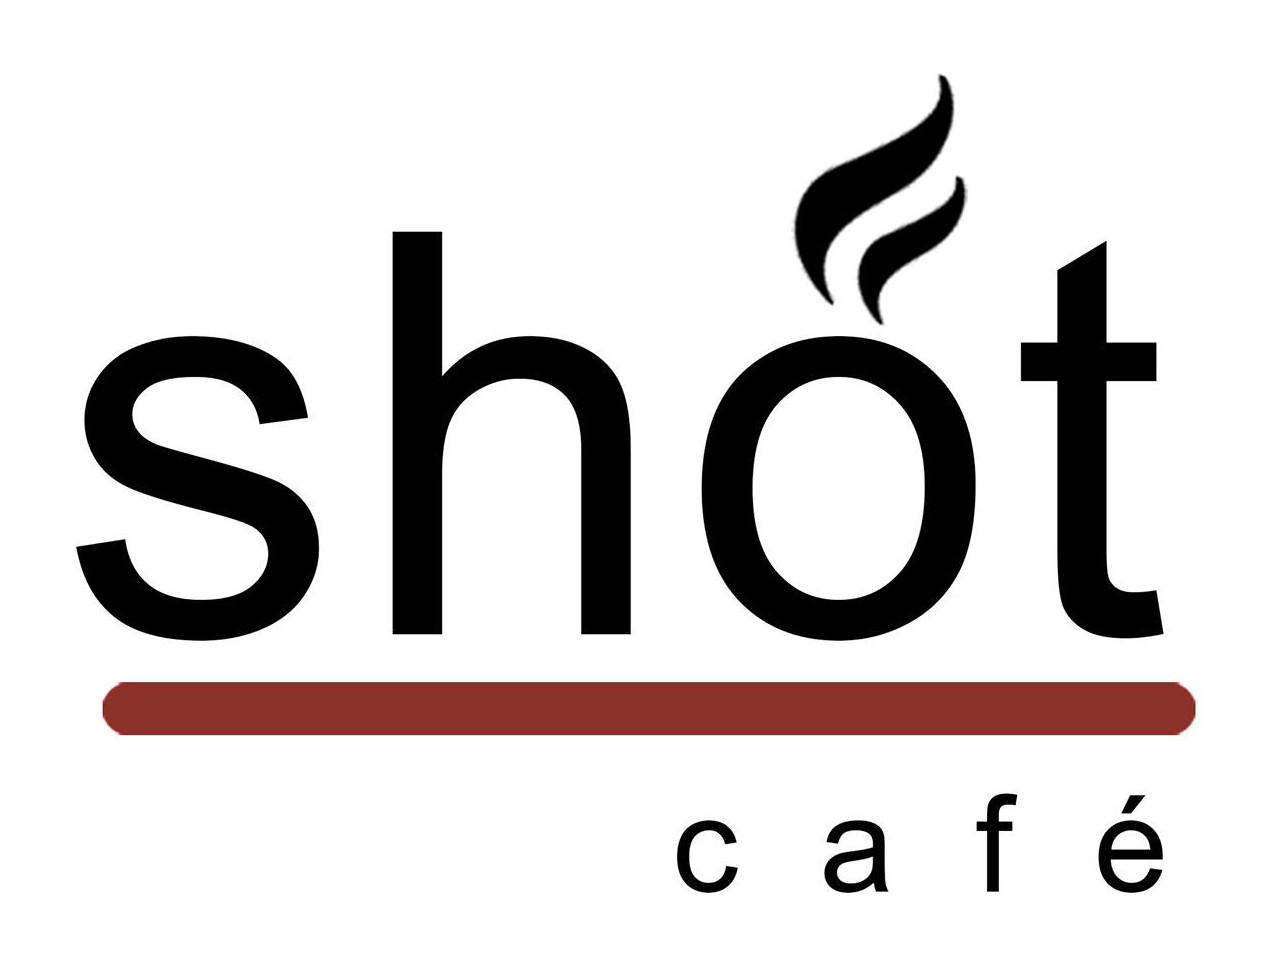 Shot Cafe